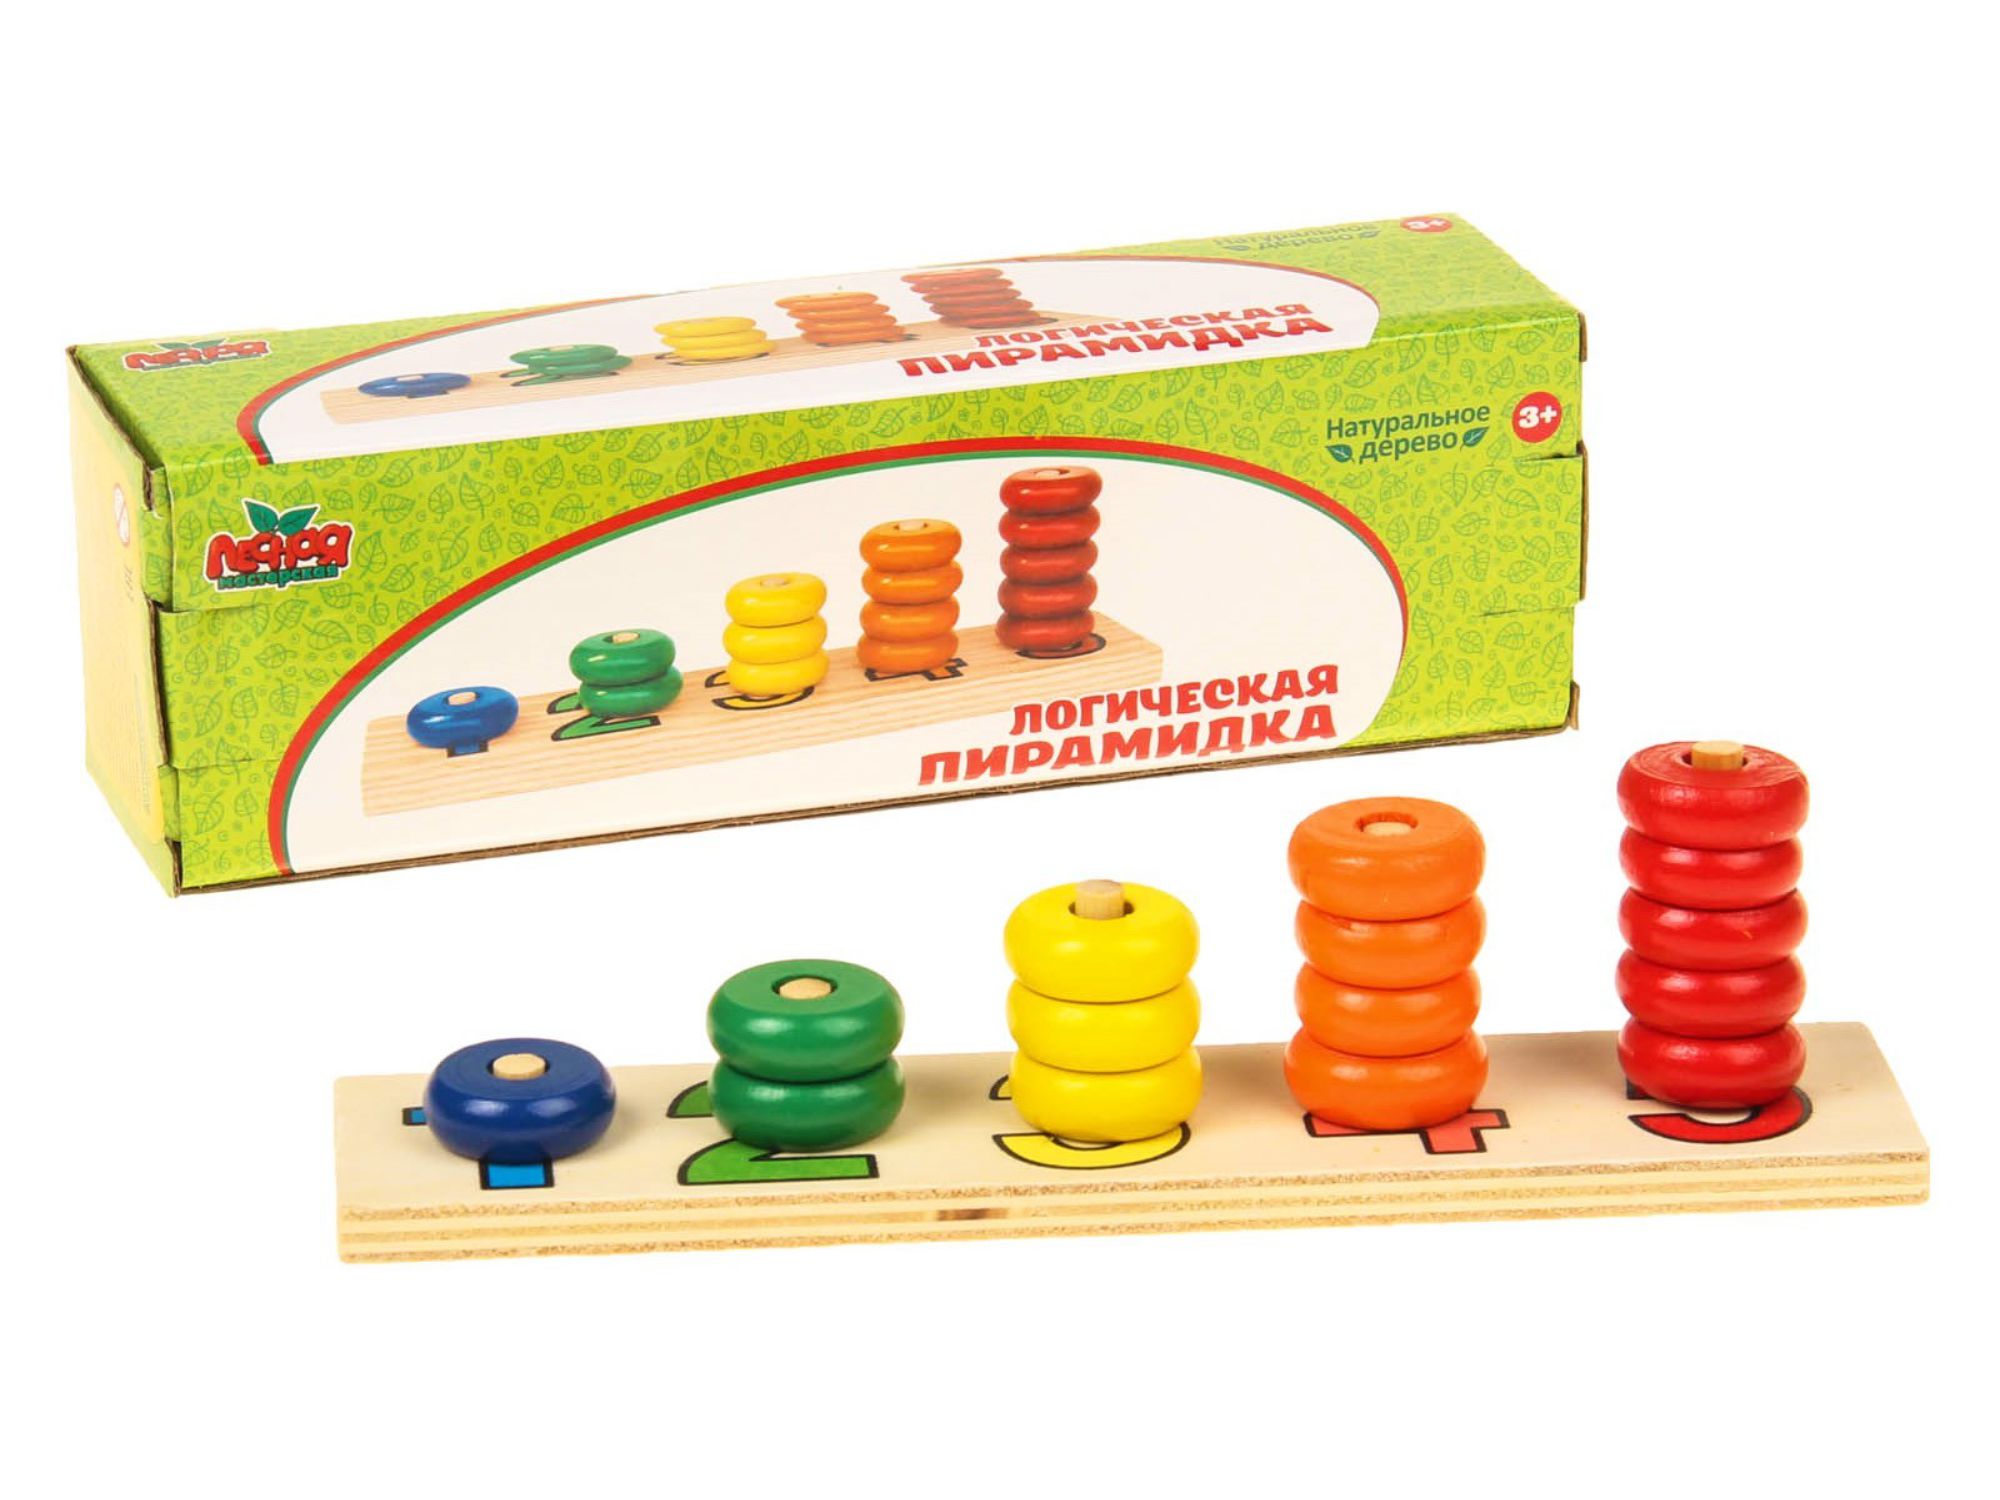 Մանկական խաղալիք SIMA-LAND 452138 սովորում ենք հաշվել 